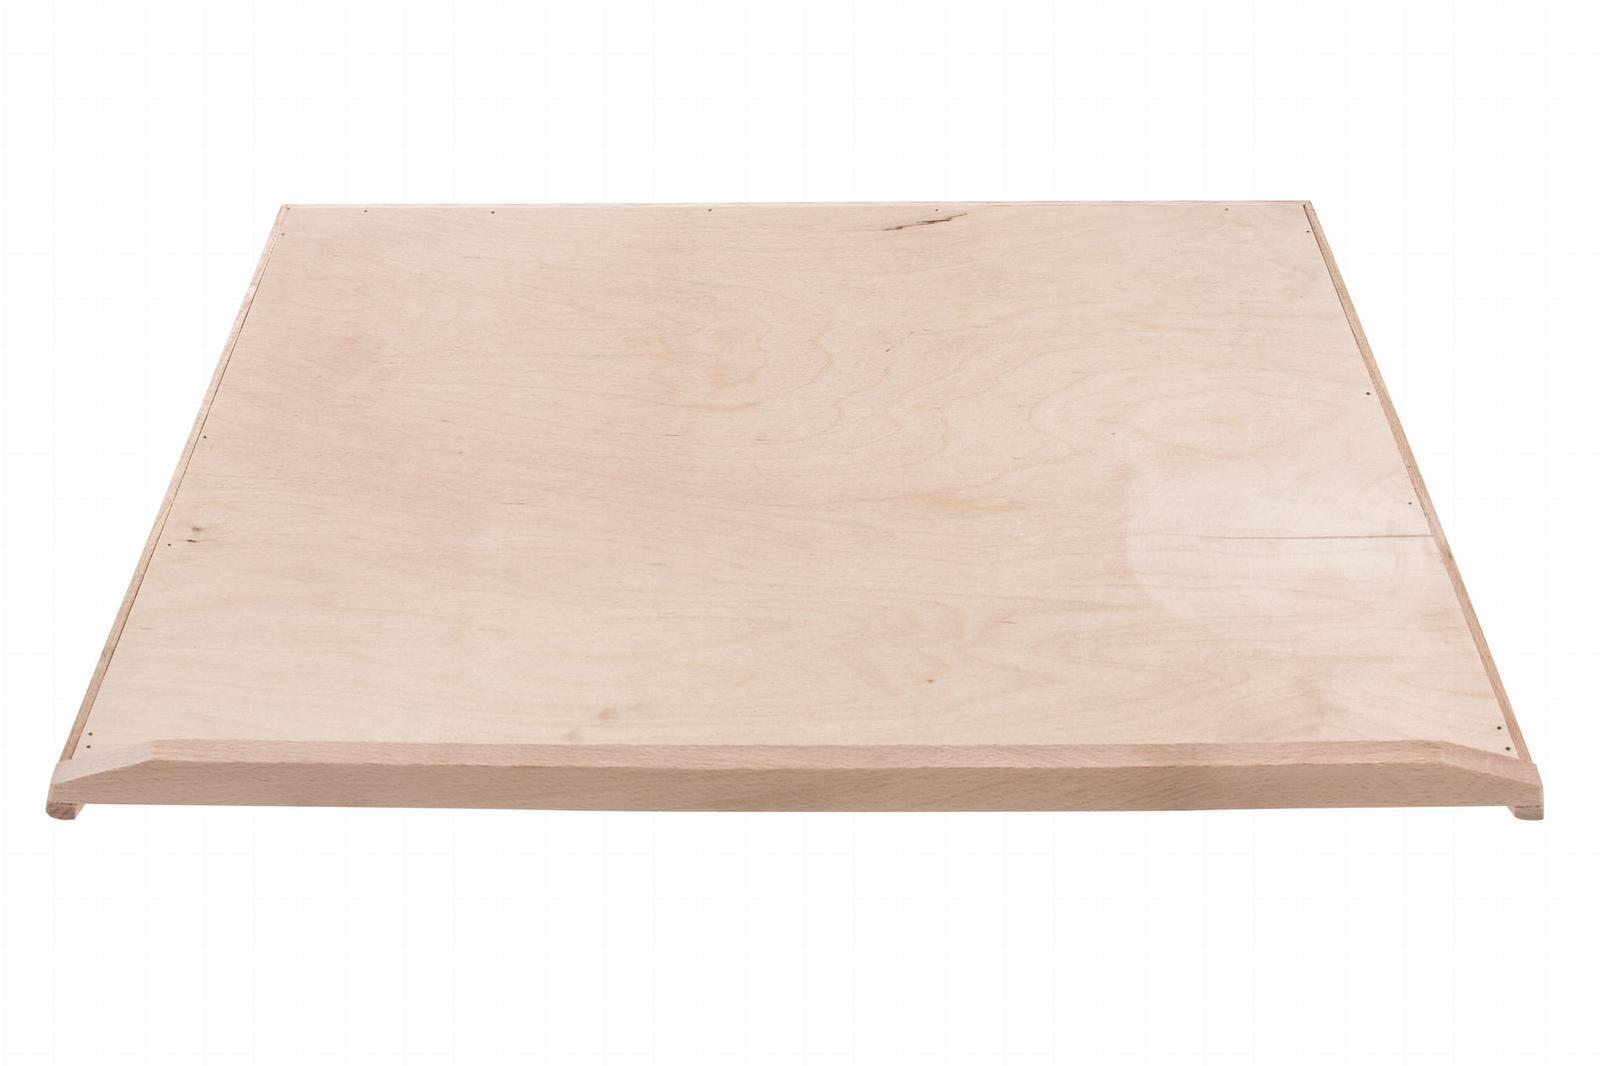 Stolnica kuchenna 52x1,6x70 cm drewniana jednostronna XL + wałek  nr. 2